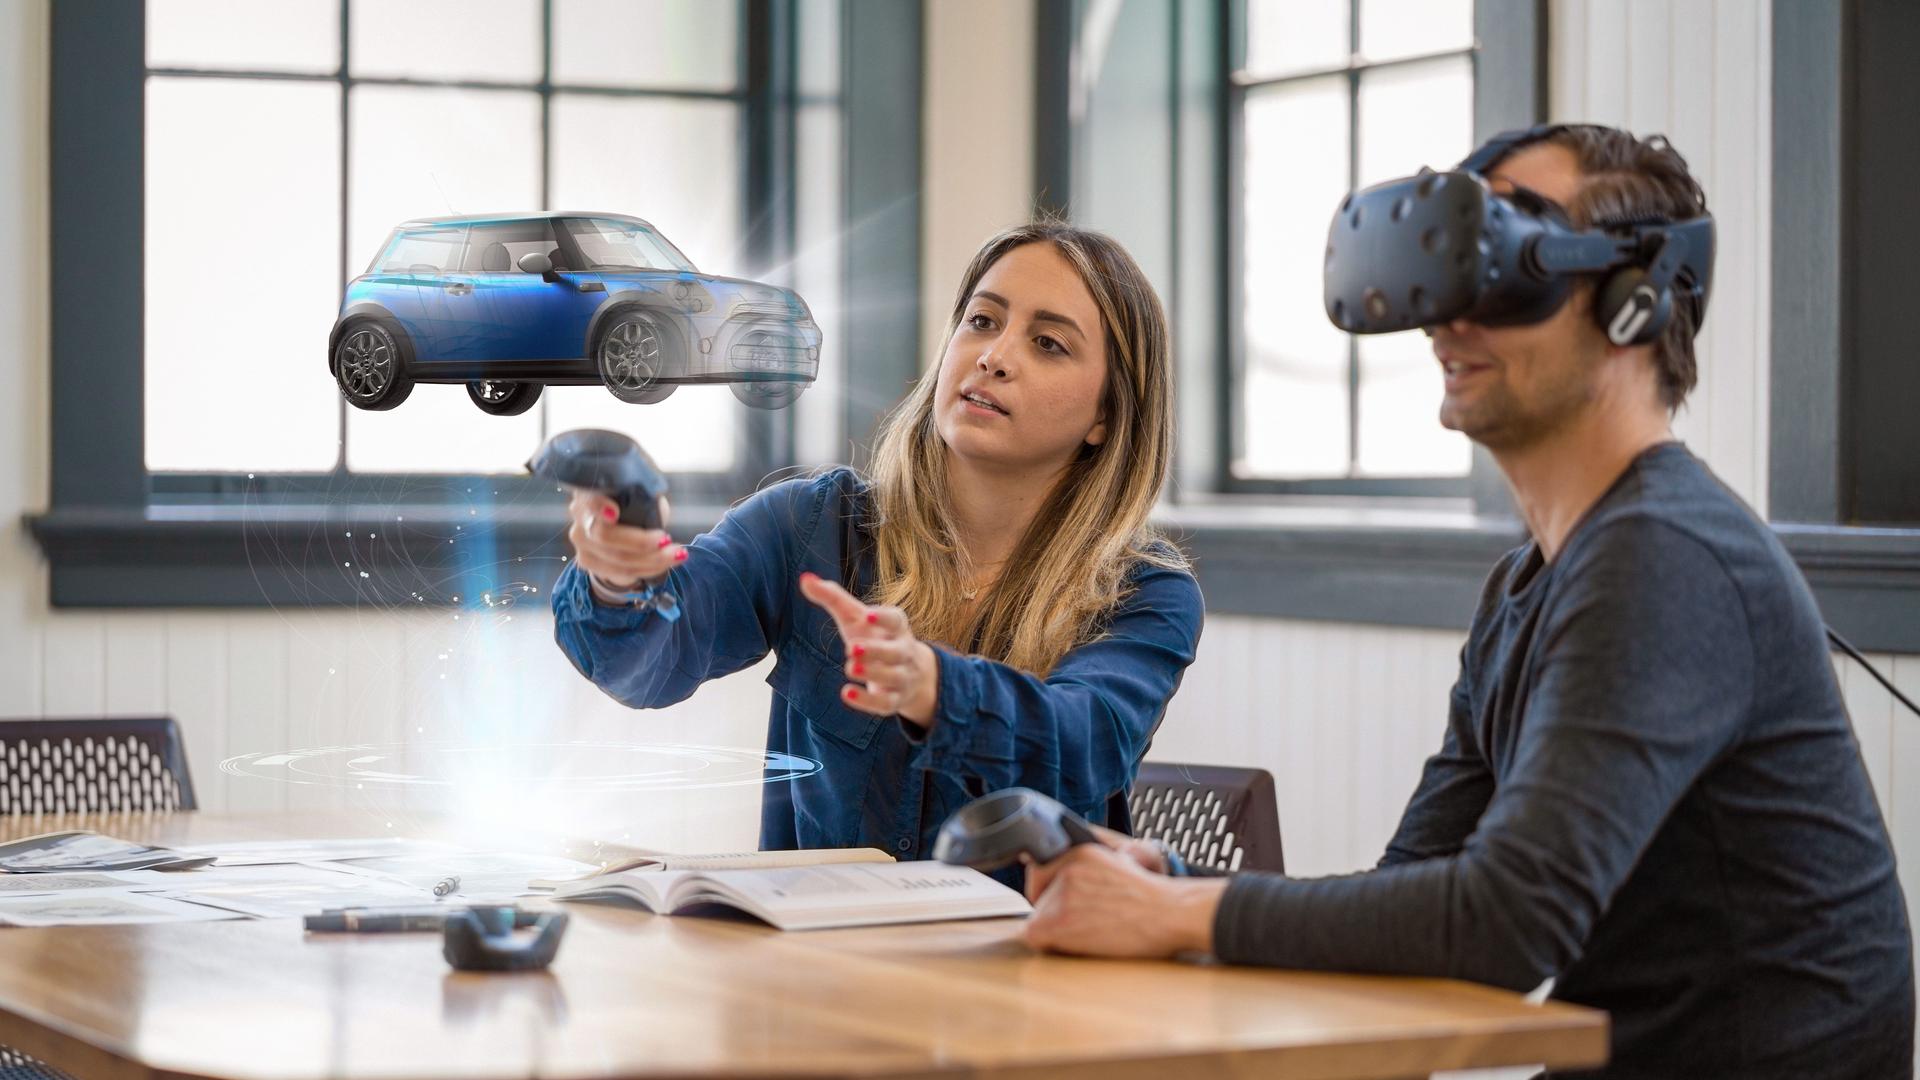 Mann mit VR Brille sitzt am Tisch. Neben ihm eine Frau die einen virtuellen Wagen beschreibt.